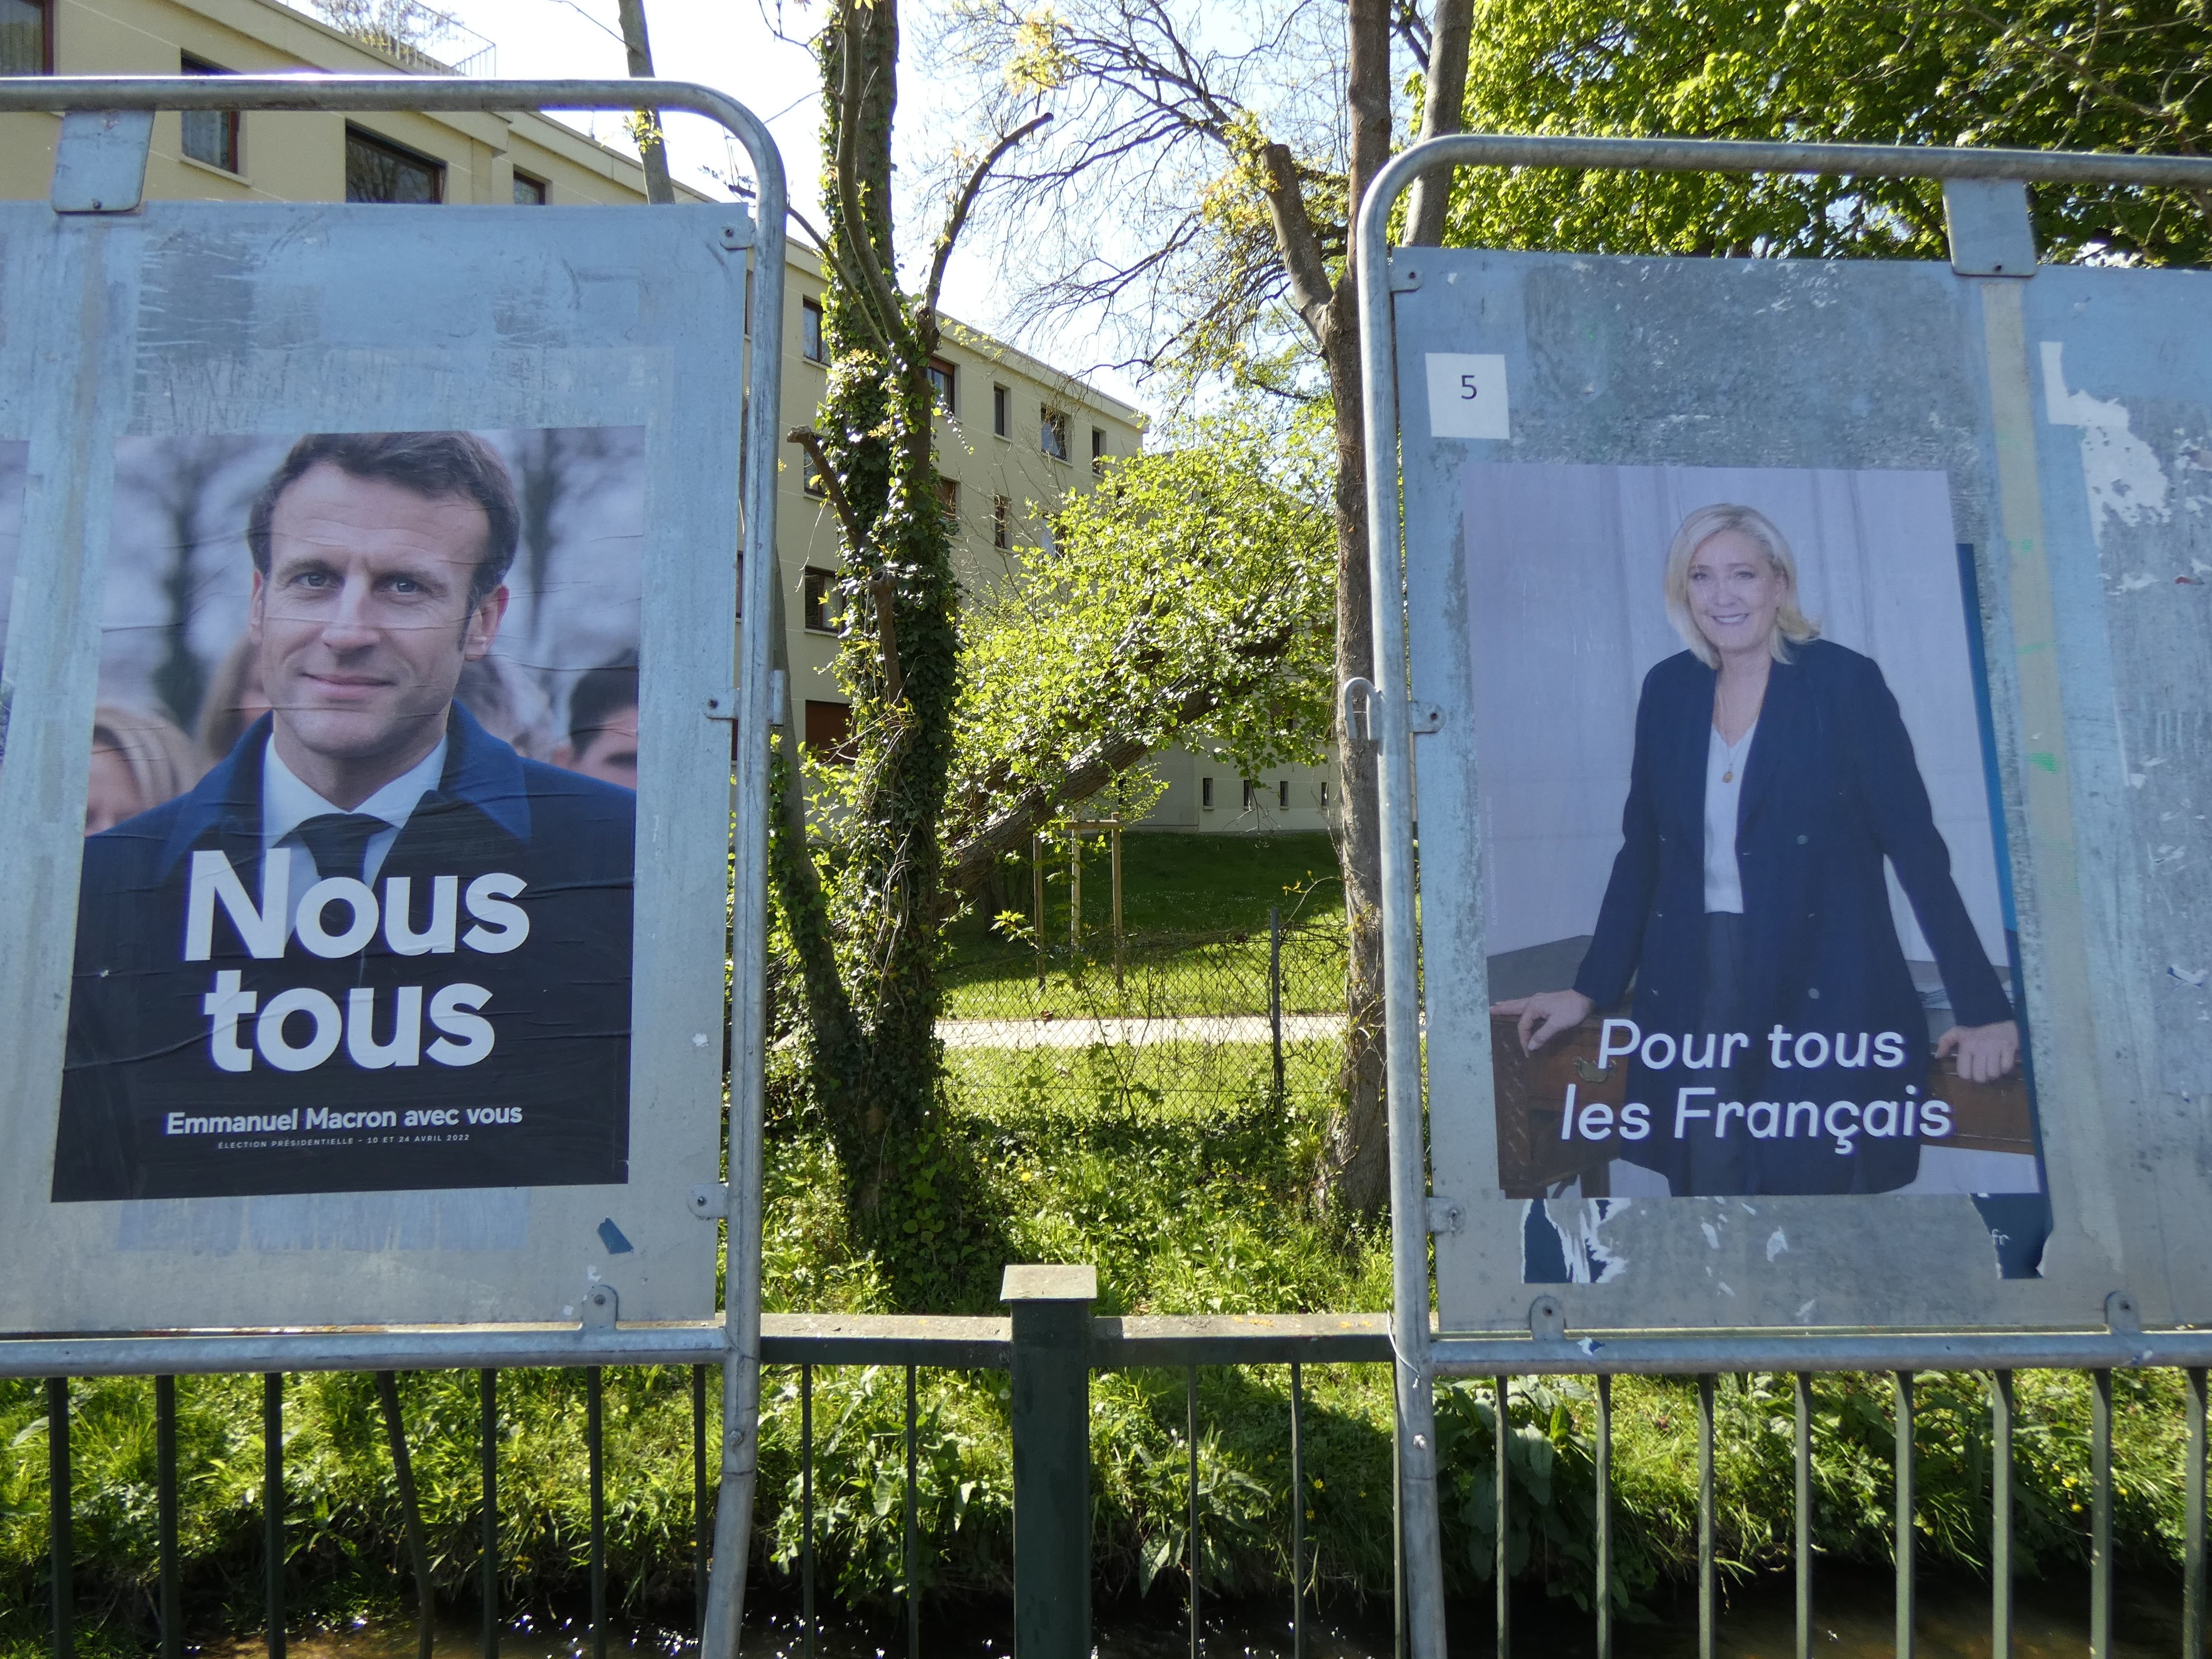 Bures-sur-Yvette, le 22 avril 2022. Pour le second tour de la présidentielle, les 799 958 électeurs de l'Essonne devront choisir entre Emmanuel Macron et Marine Le Pen. En Essonne, les bureaux de vote sont ouverts de 8 heures à 20 heures. LP/Cécile Chevallier